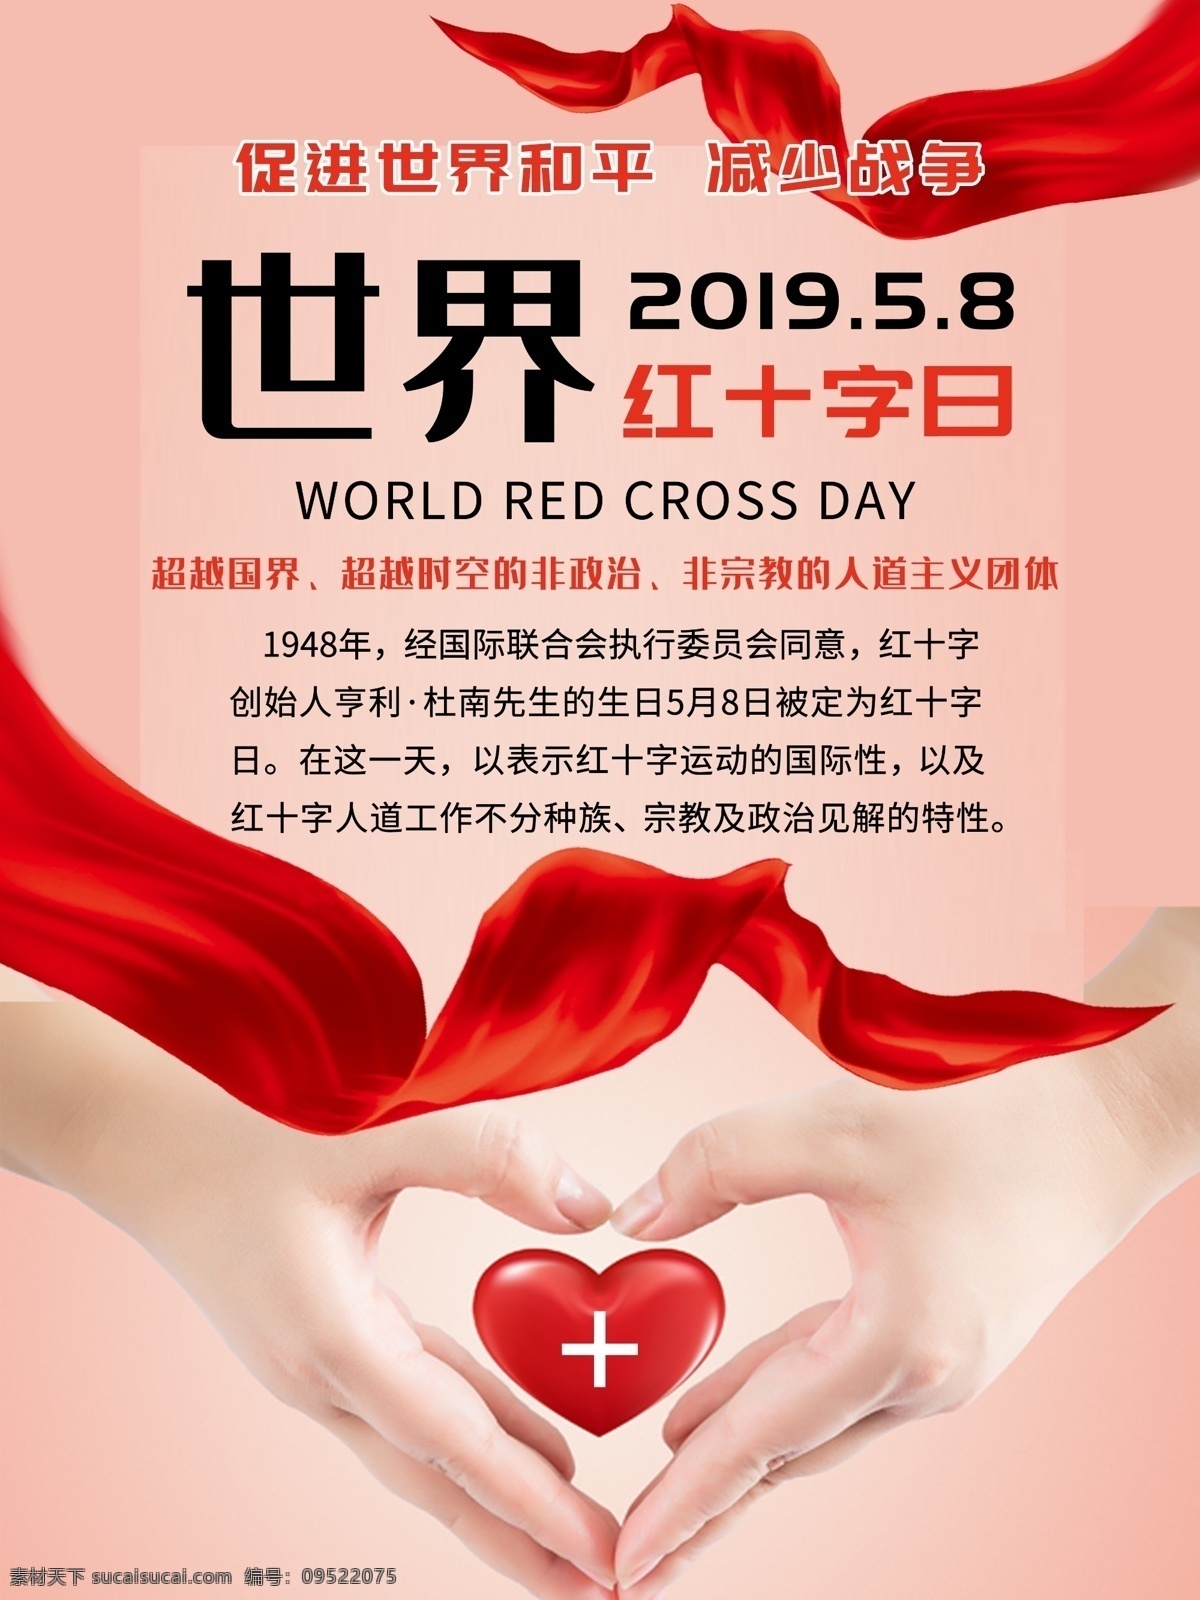 红丝 带 红十字日 海报 红丝带 丝带 红十字 红十字会 医院 医生 护士 爱心 援助 世界 和平 公益